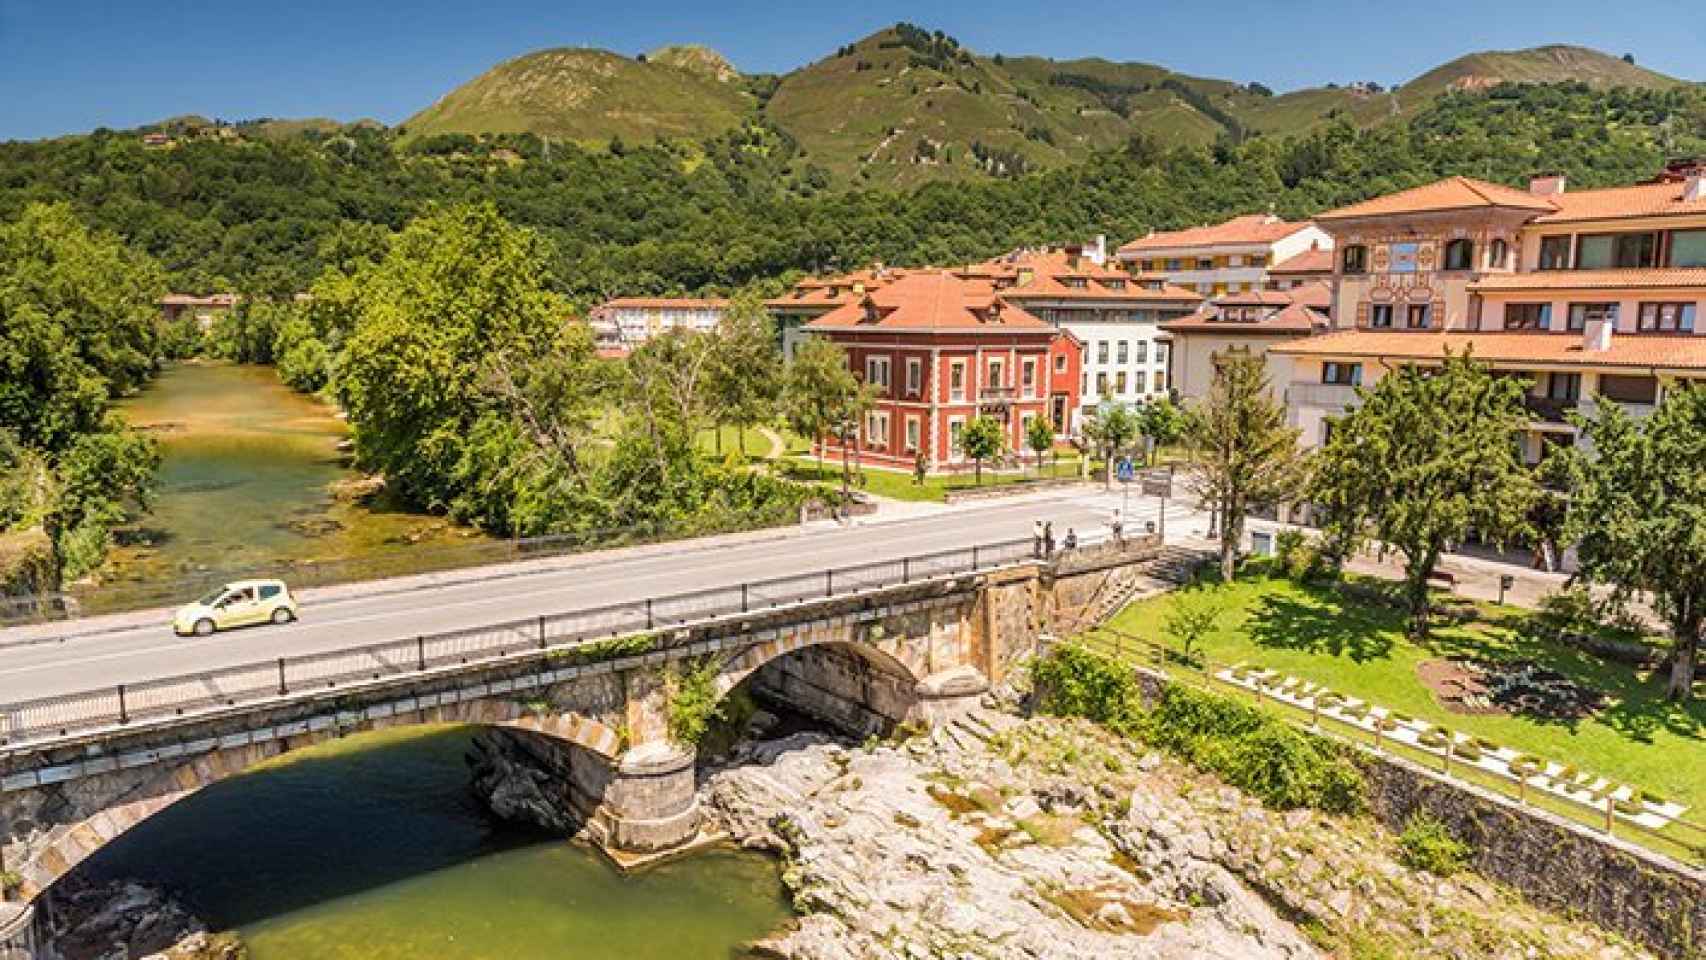 Ruta por el oriente asturiano